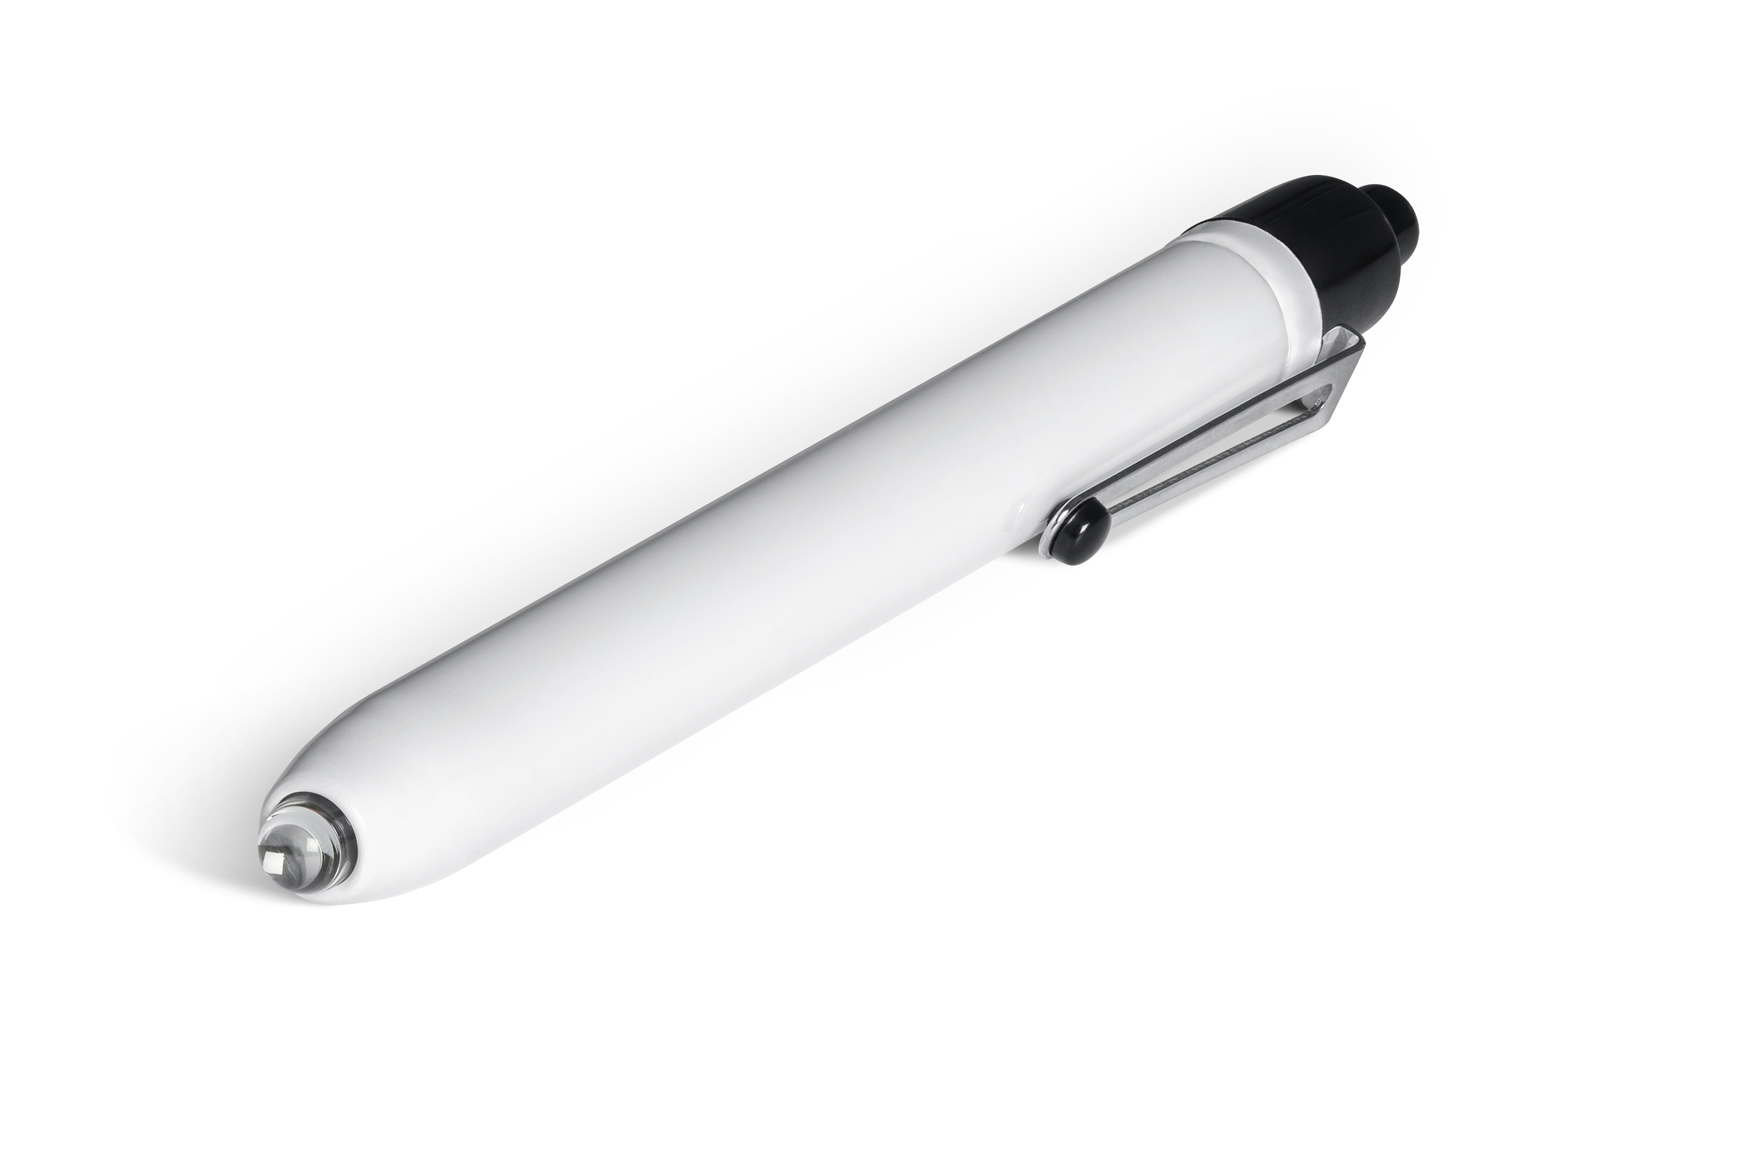 Lampe stylo jetable pour examen médical - Lampe d'examen médical